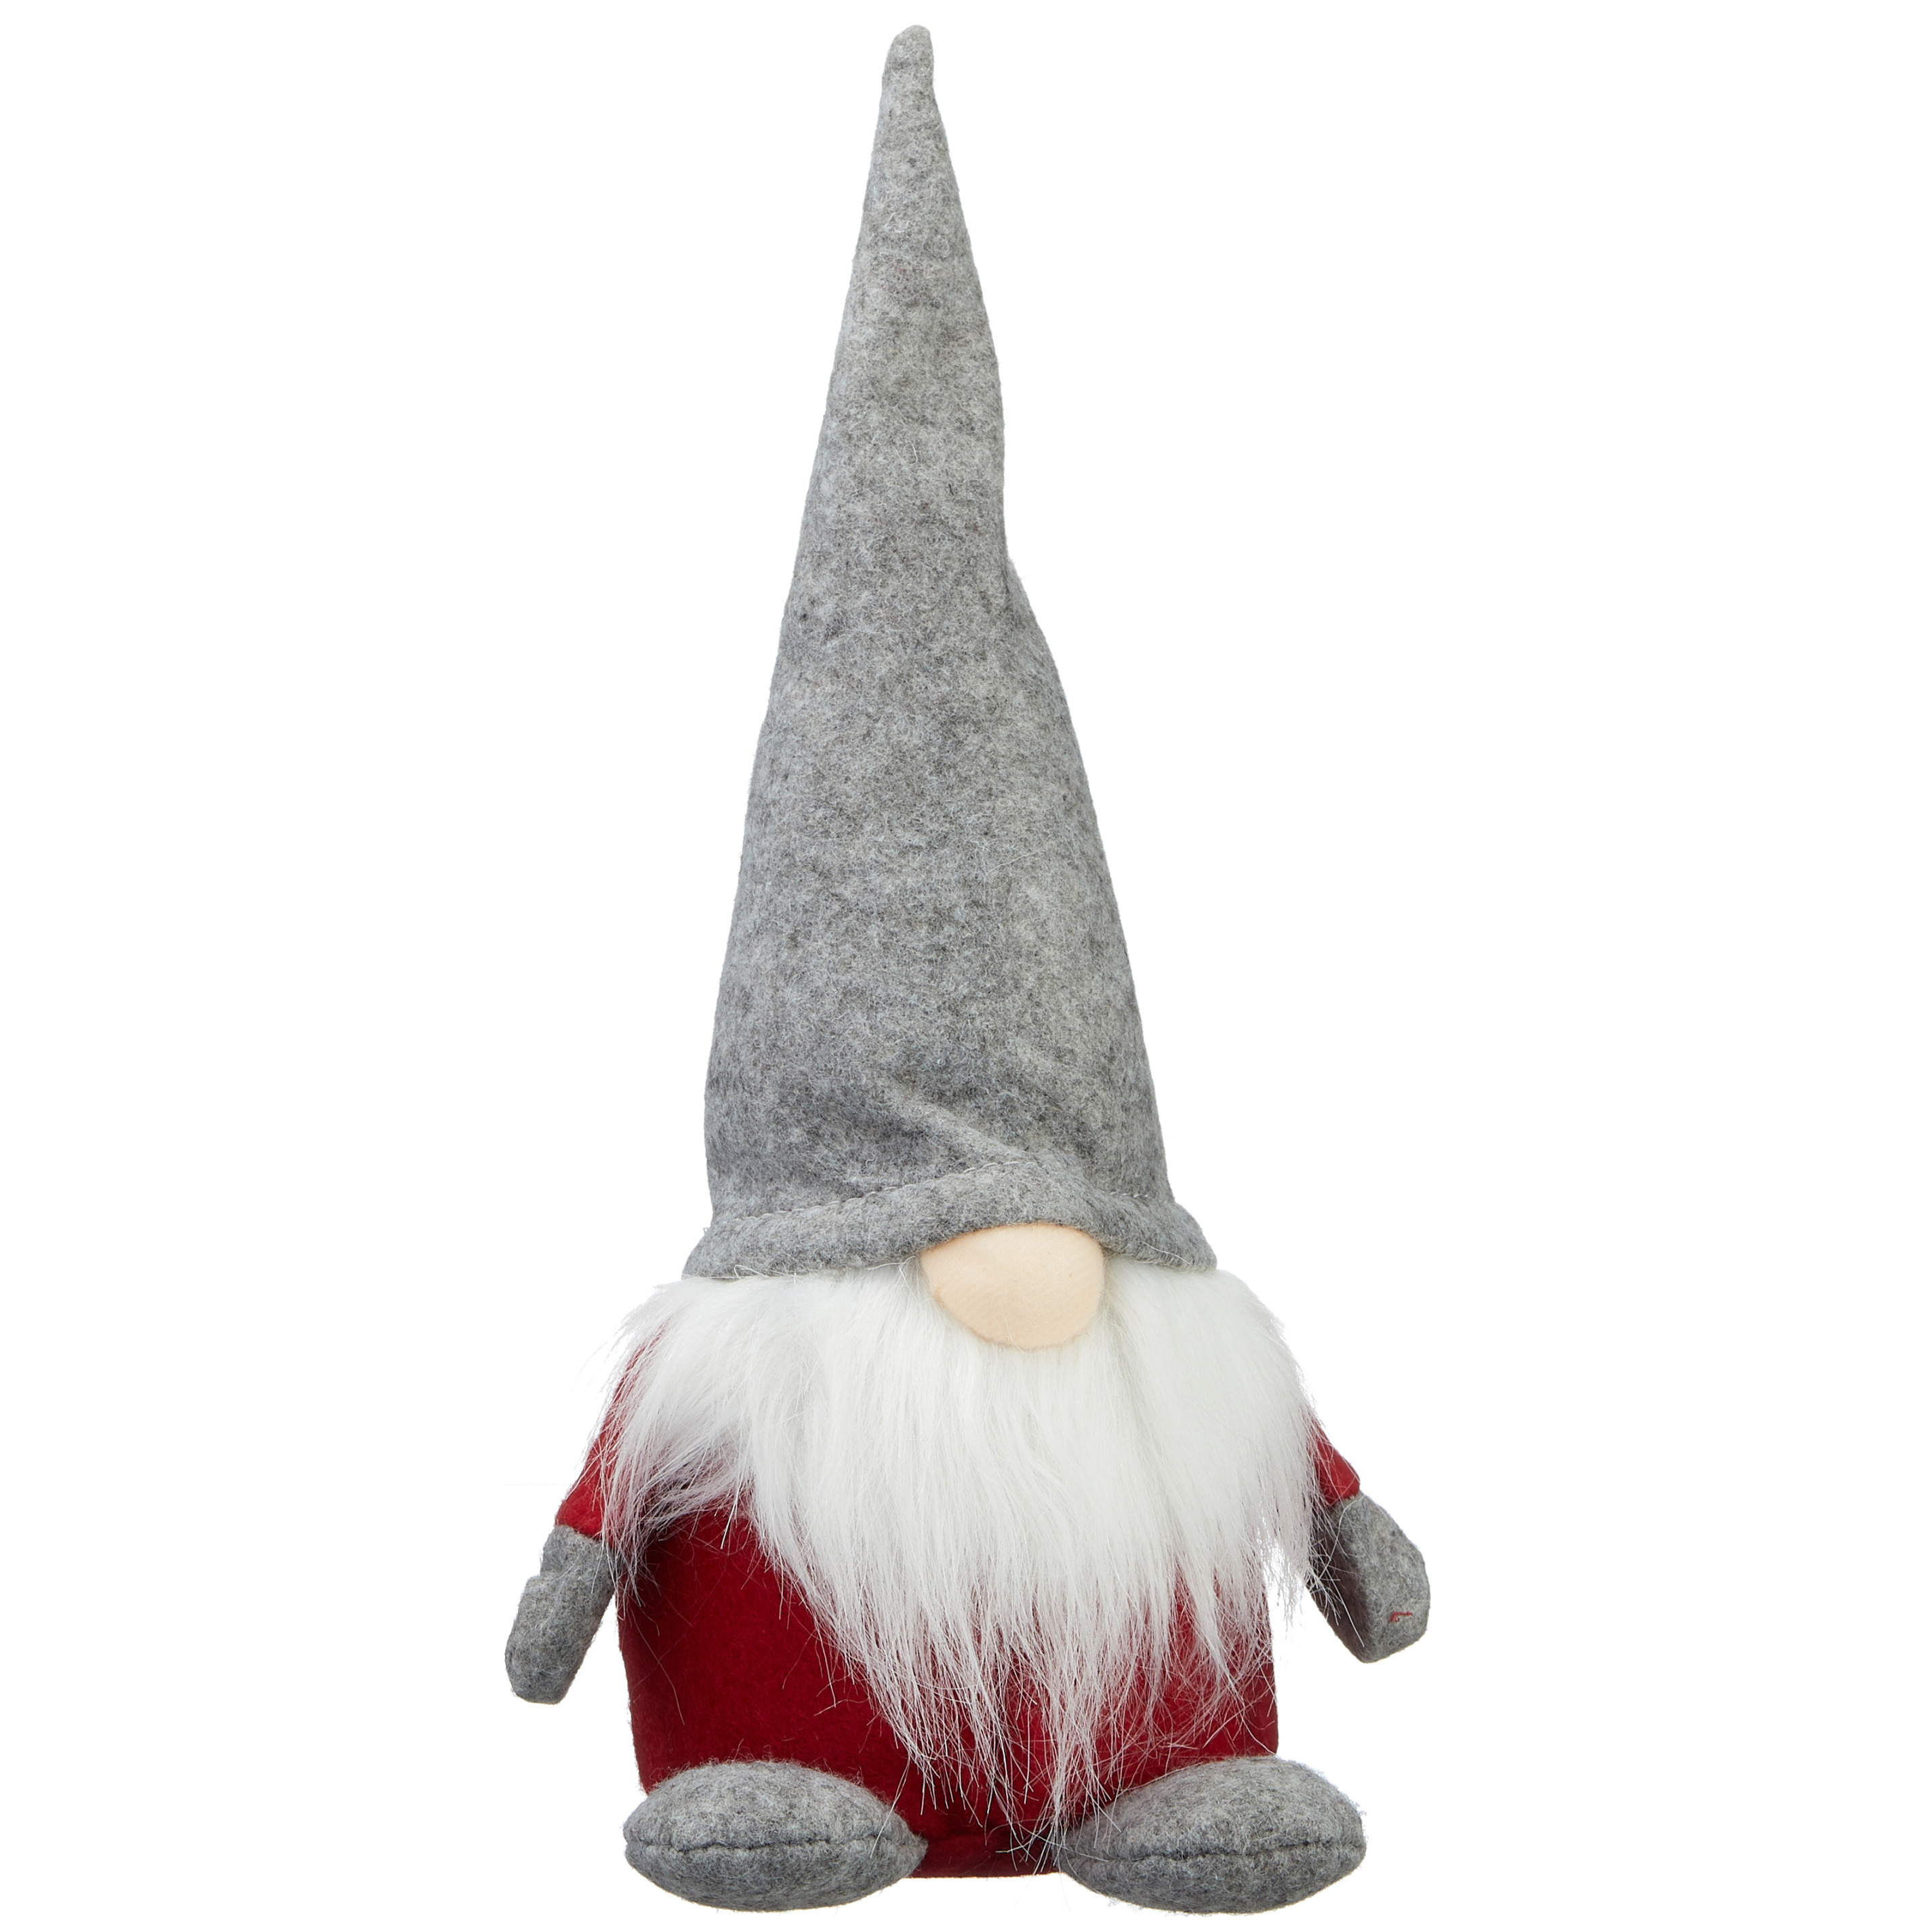 Haat Mainstream Goot Pluche gnome/dwerg decoratie pop/knuffel met grijze muts 30 cm bestellen  voor € 13.99 bij het Knuffelparadijs